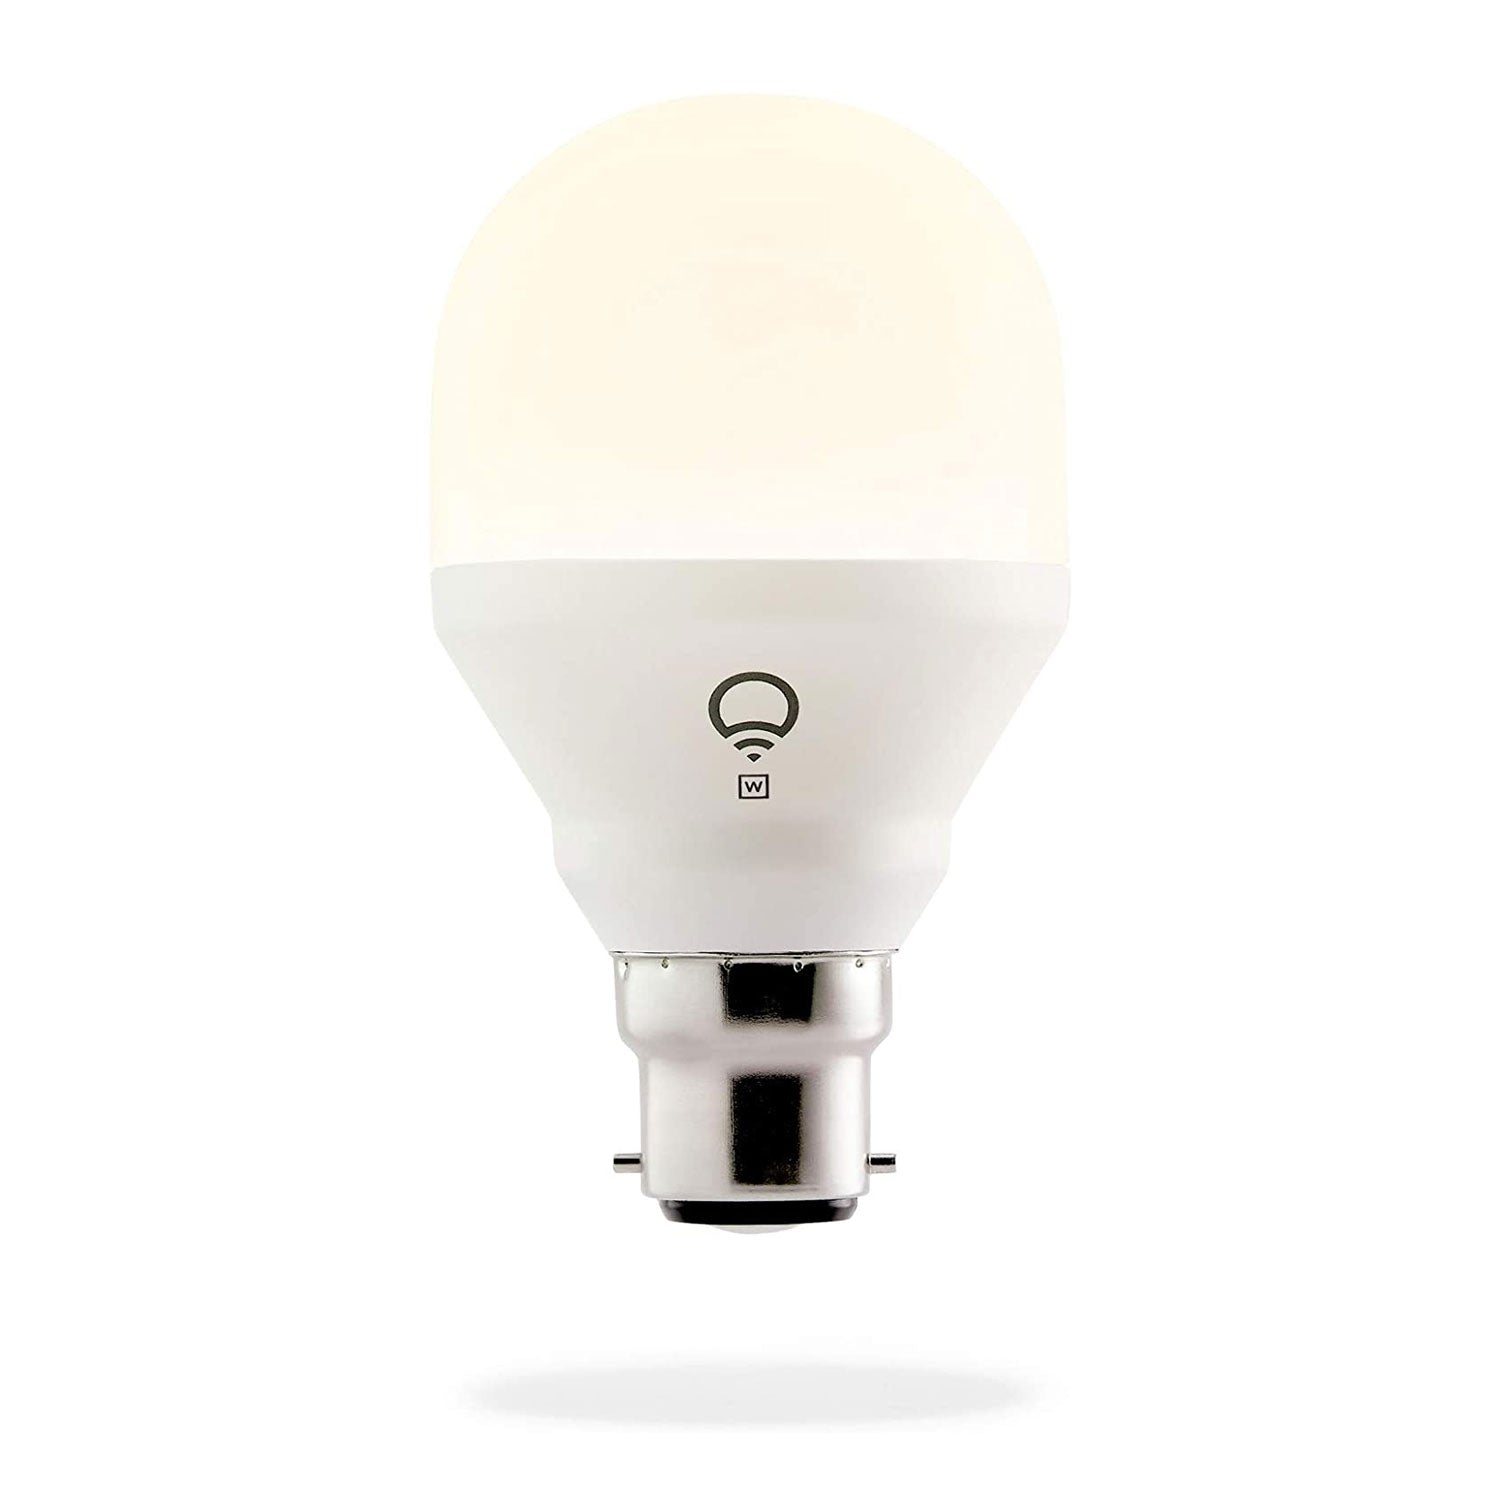 LIFX Mini light bulb emitting a white light